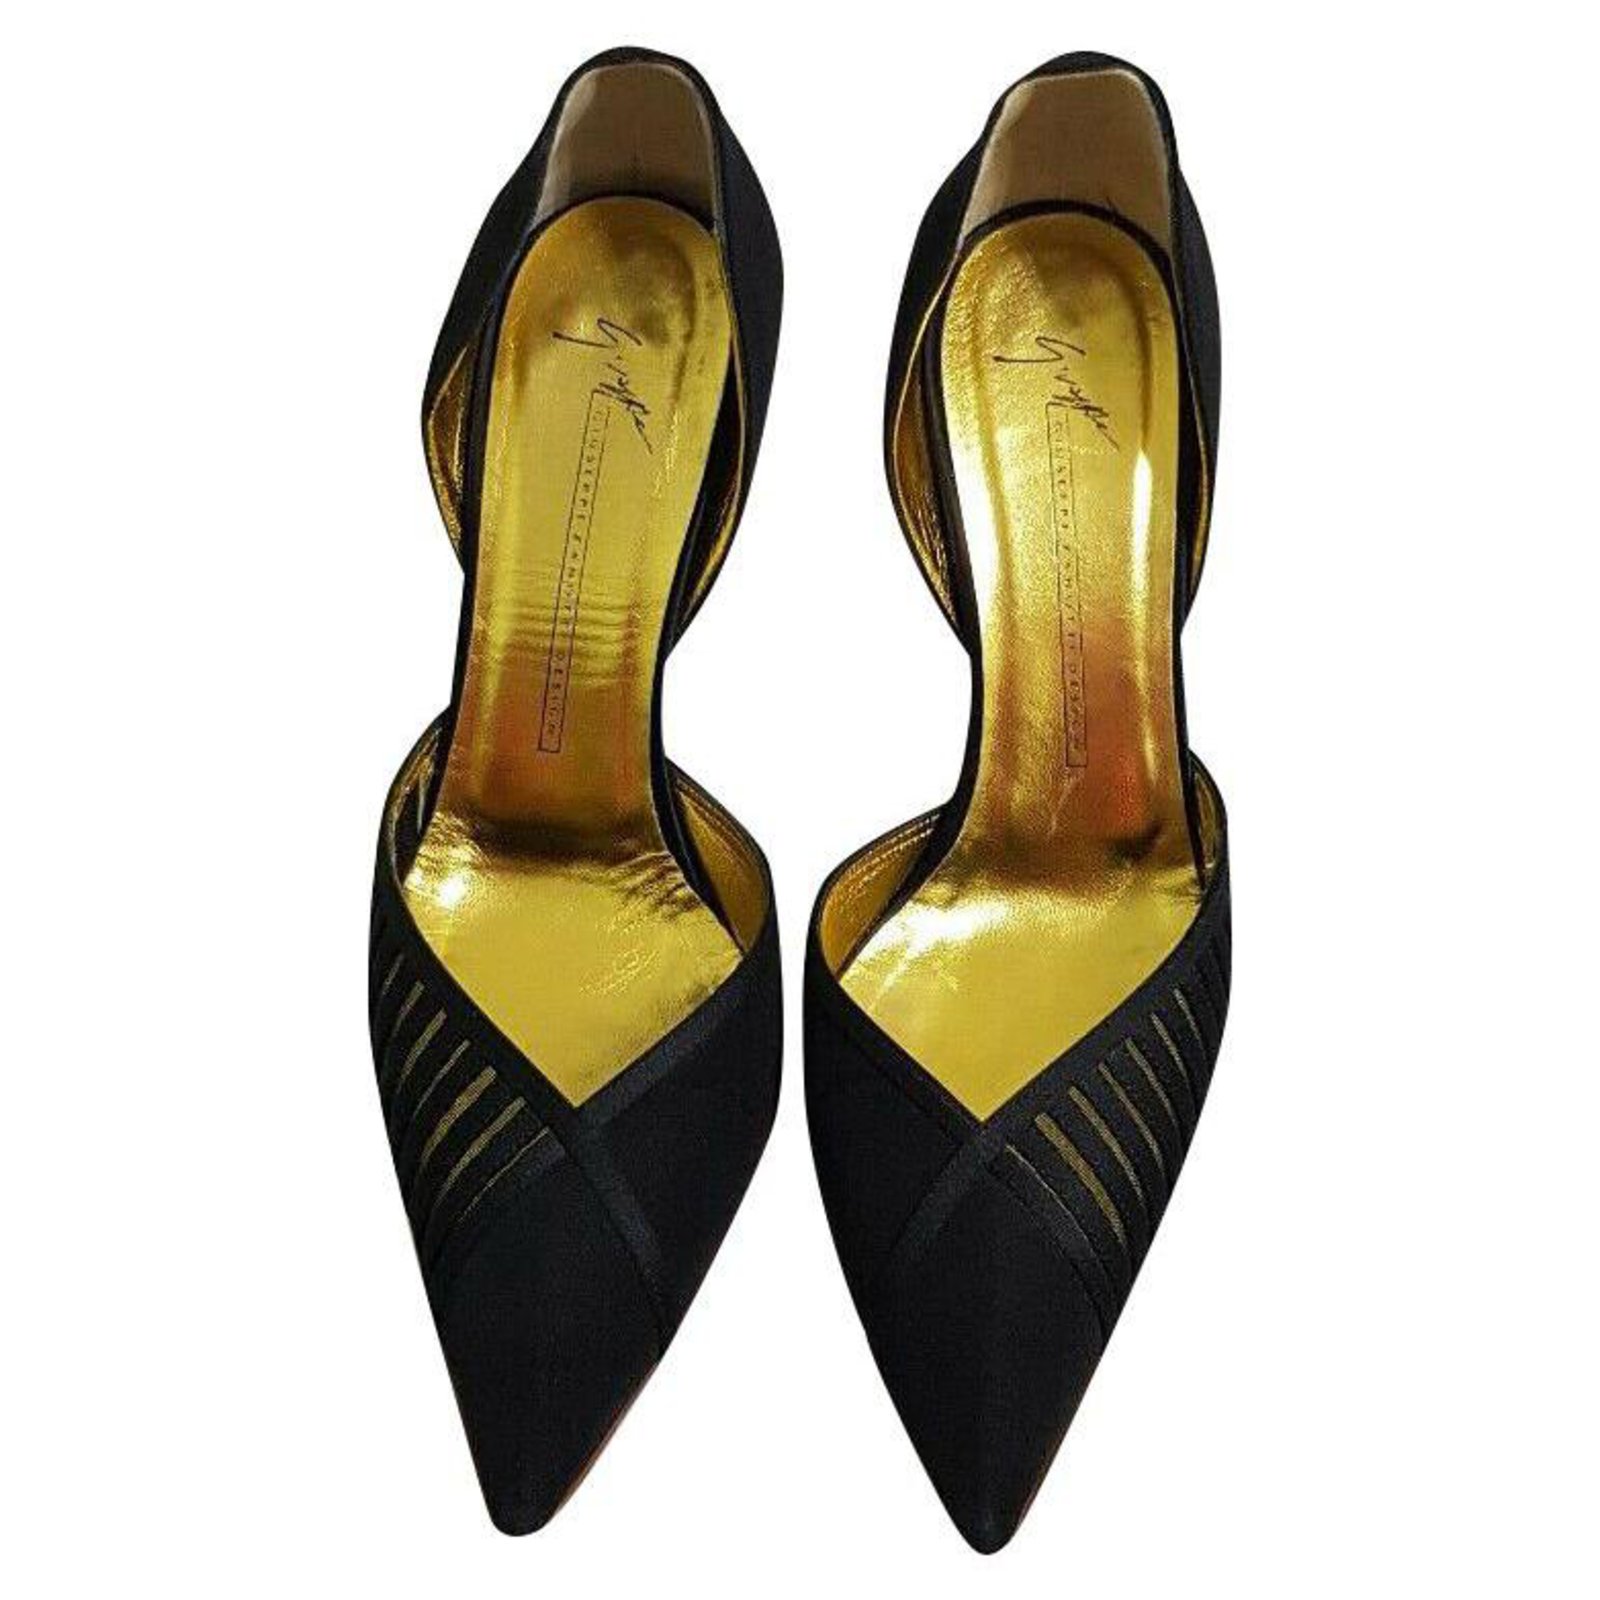 black n gold heels